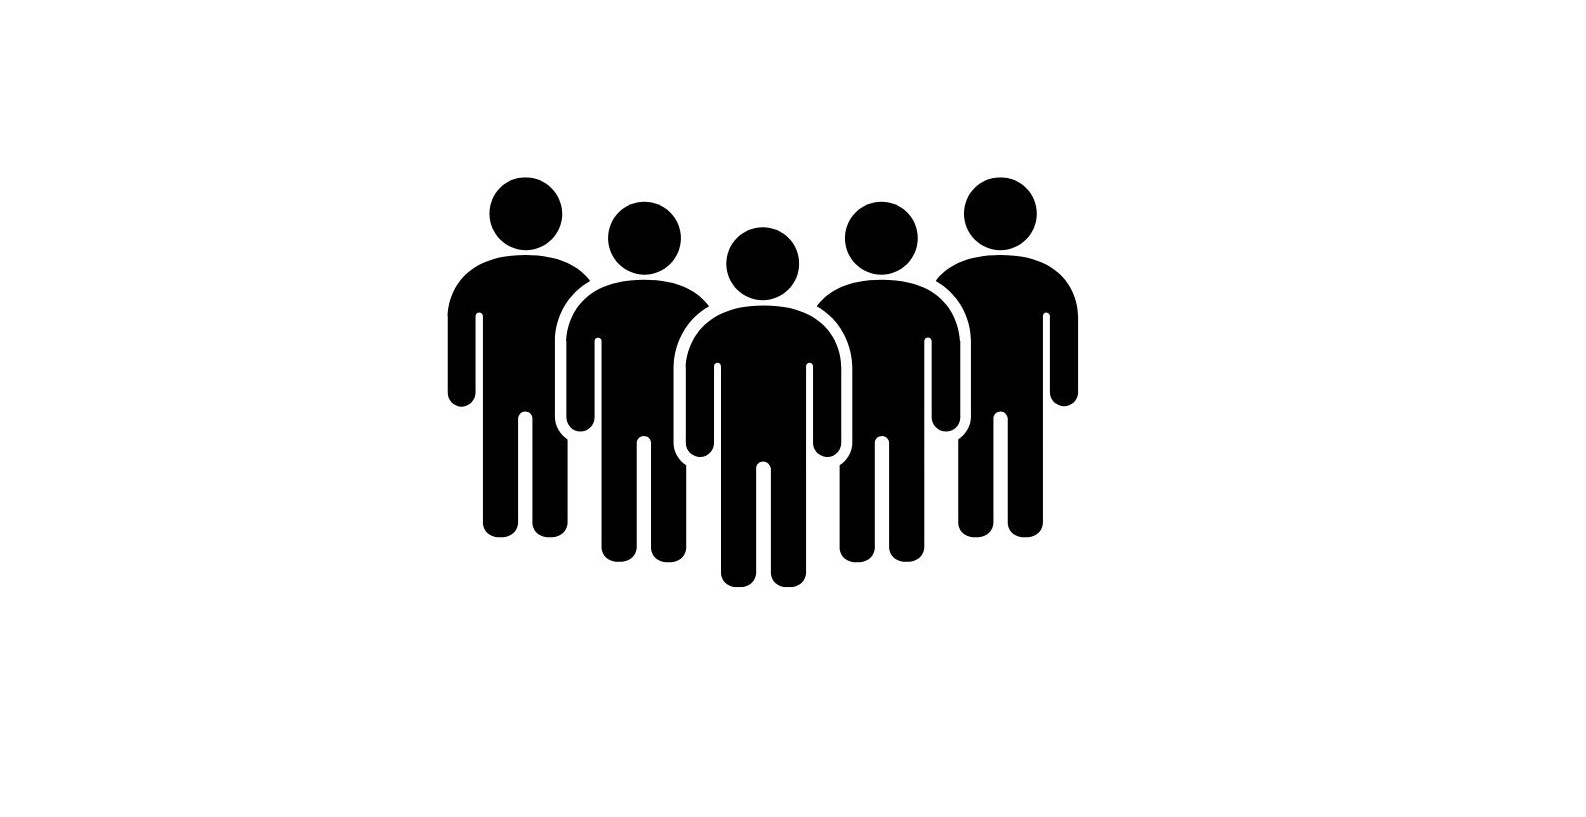 Jednokolorowy rysunek pięciu czarnych postaci, stojących koło siebie.